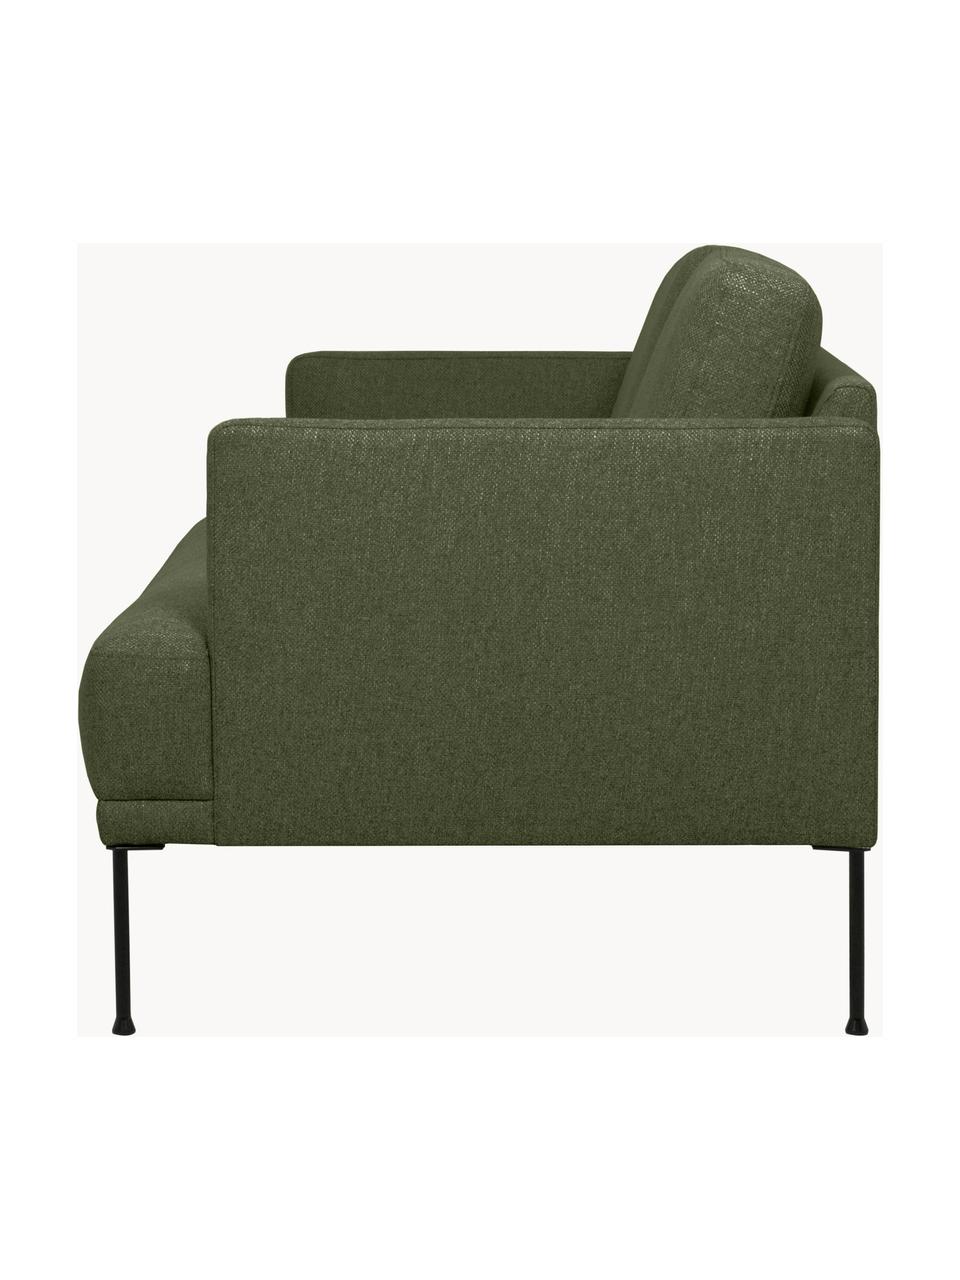 Sofa Fluente (3-Sitzer) mit Metall-Füssen, Bezug: 100% Polyester Der hochwe, Gestell: Massives Kiefernholz, FSC, Webstoff Dunkelgrün, B 196 x T 85 cm